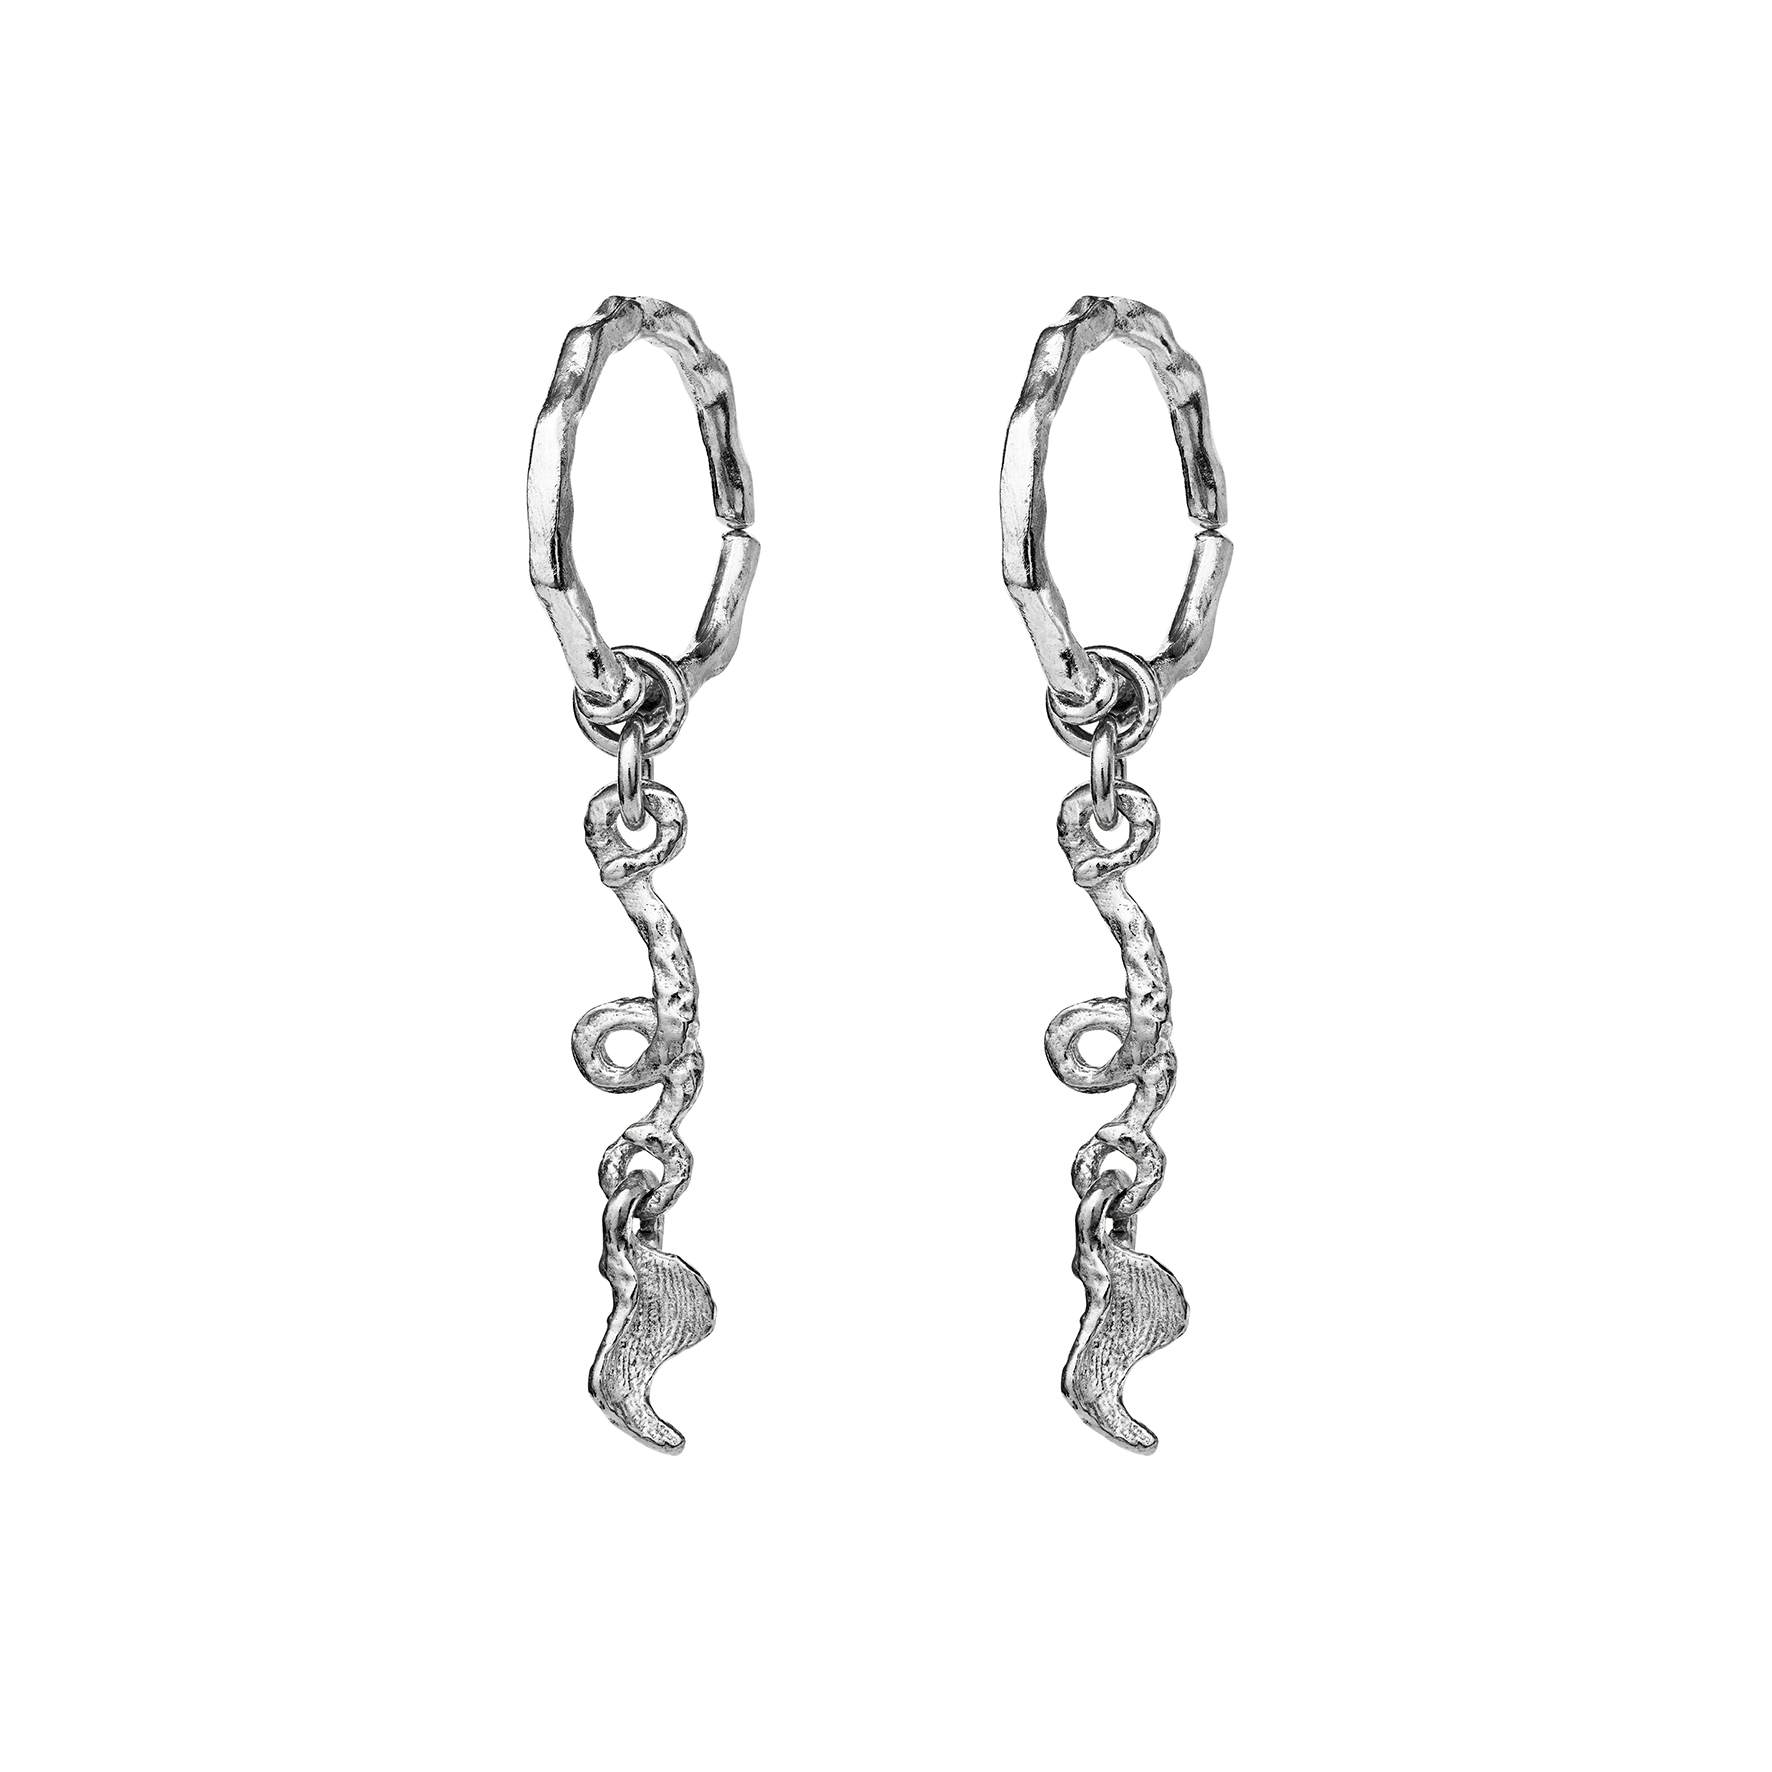 Crawda Earrings from Maanesten in Silver Sterling 925